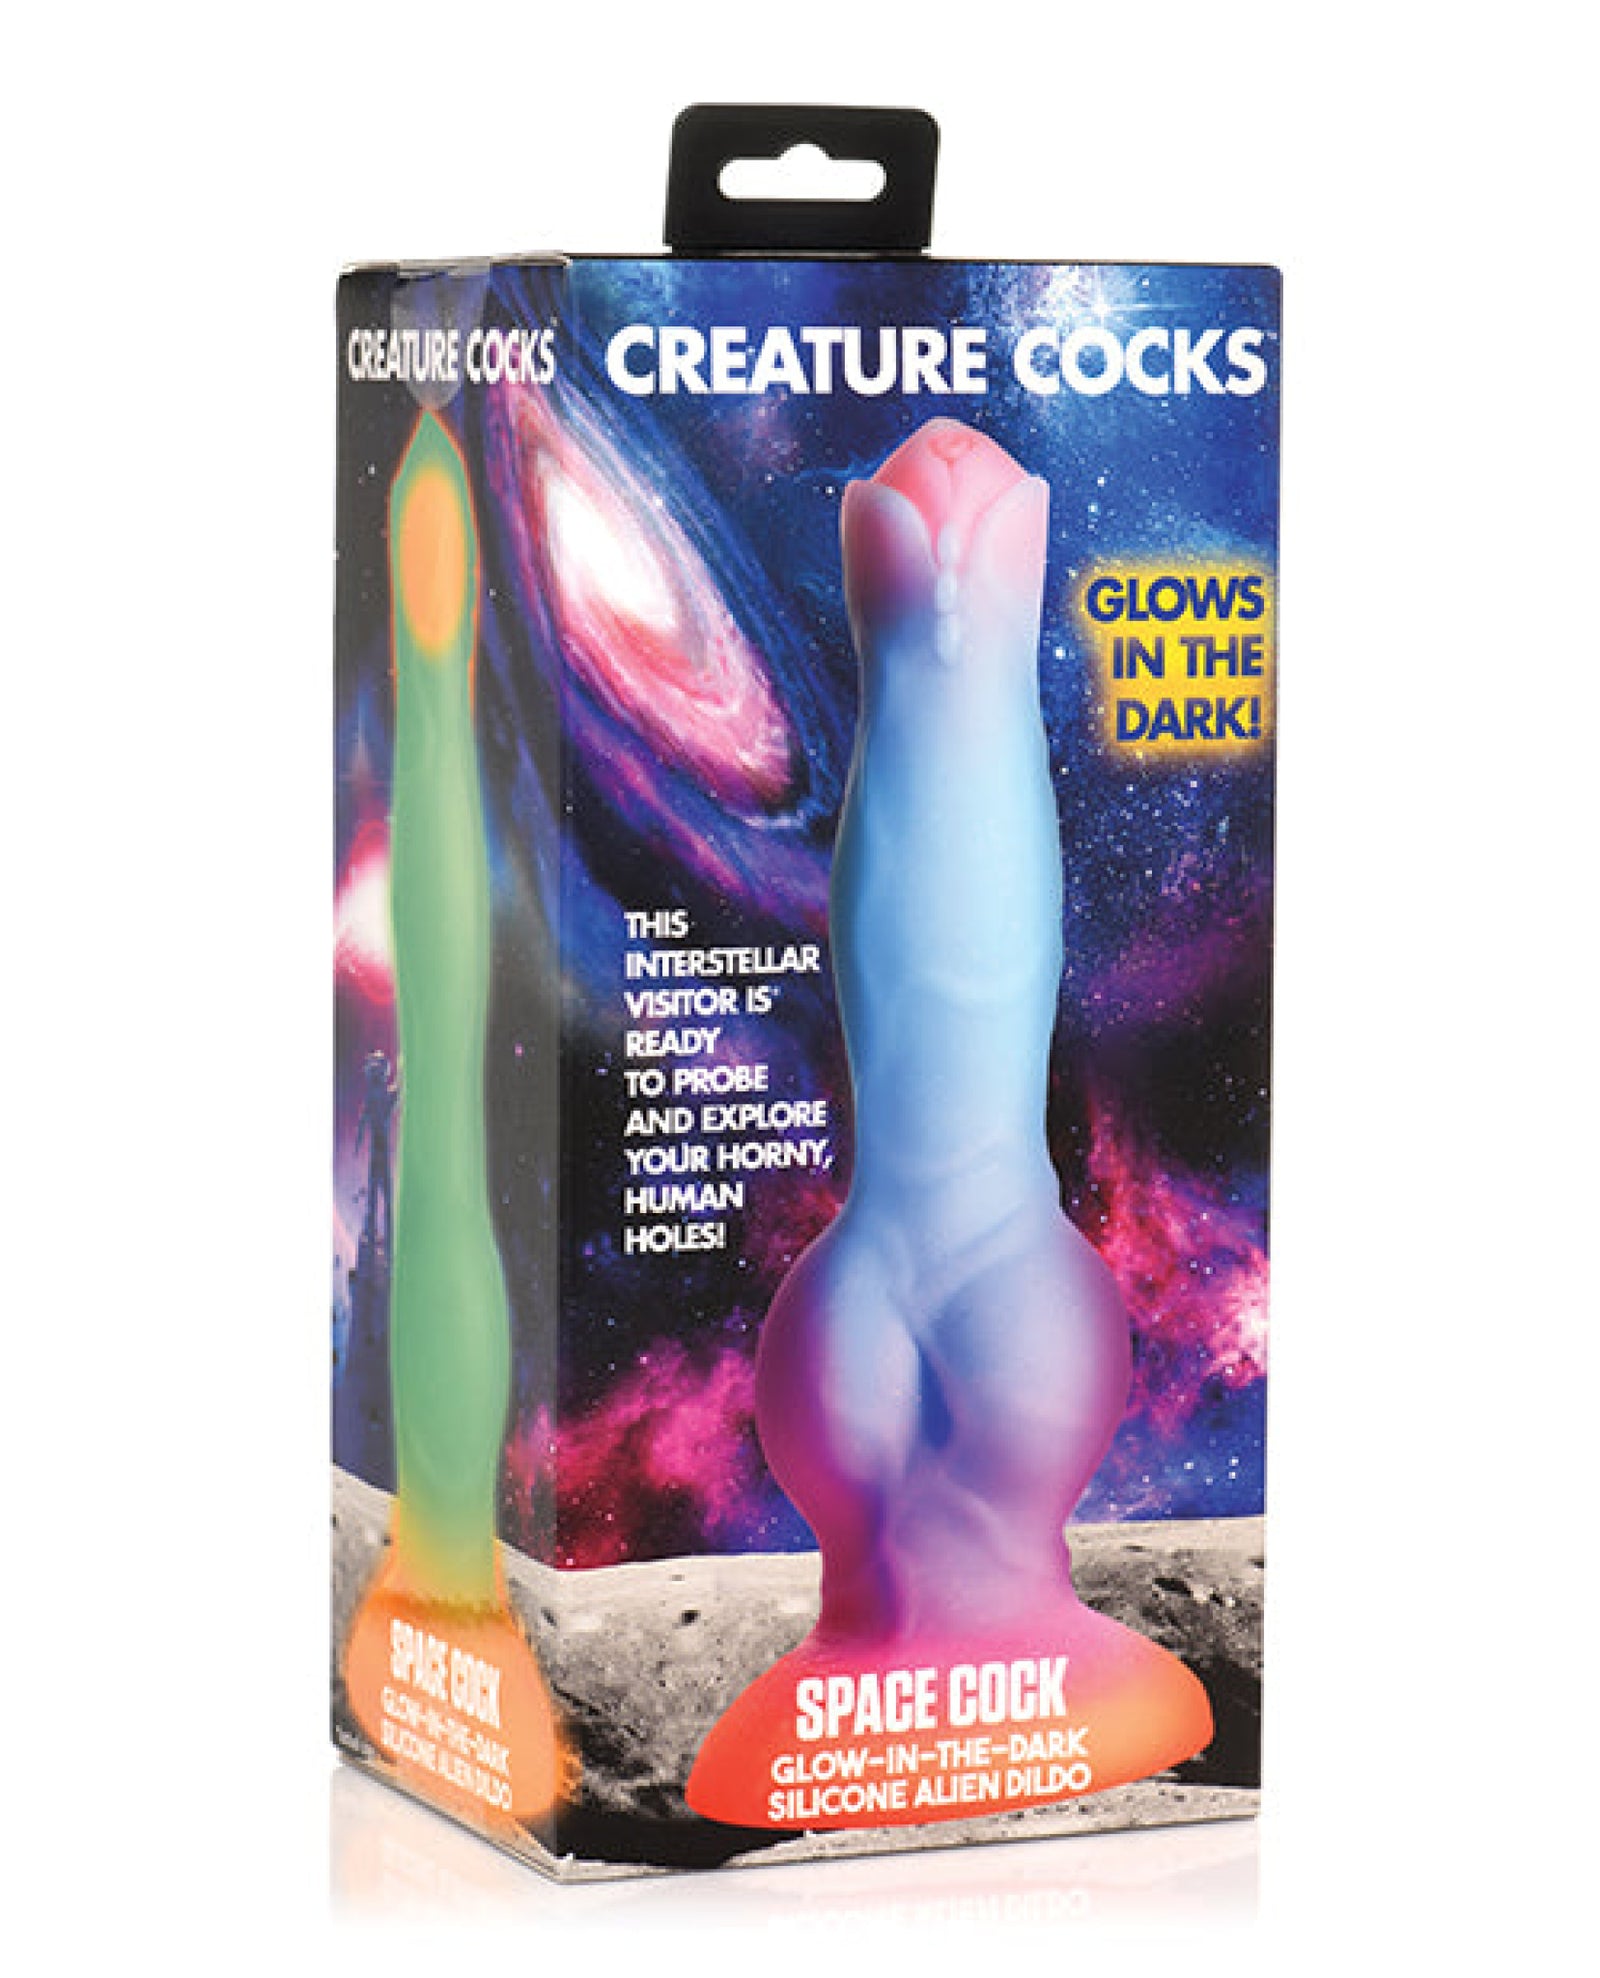 Creature Cocks Space Cock Silicone Alien Dildo - Glow In The Dark Creature Cocks